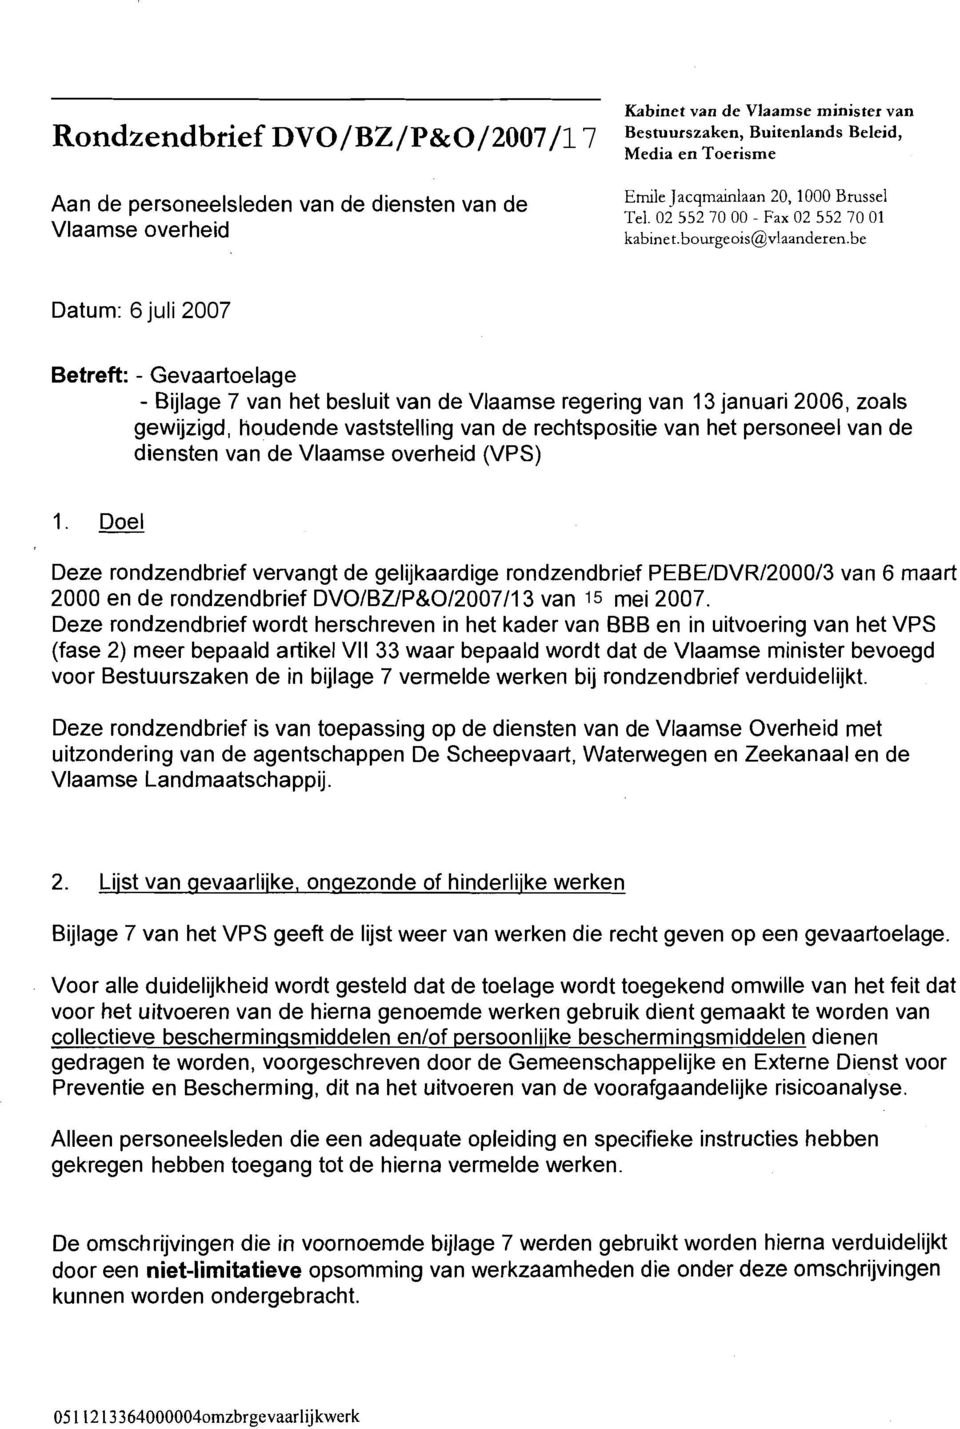 be Datum: 6 juli 2007 Betreft: - Gevaartoelage - Bijlage 7 van het besluit van de Vlaamse regering van 13 januari 2006, zoals gewijzigd, Houdende vaststelling van de rechtspositie van het personeel